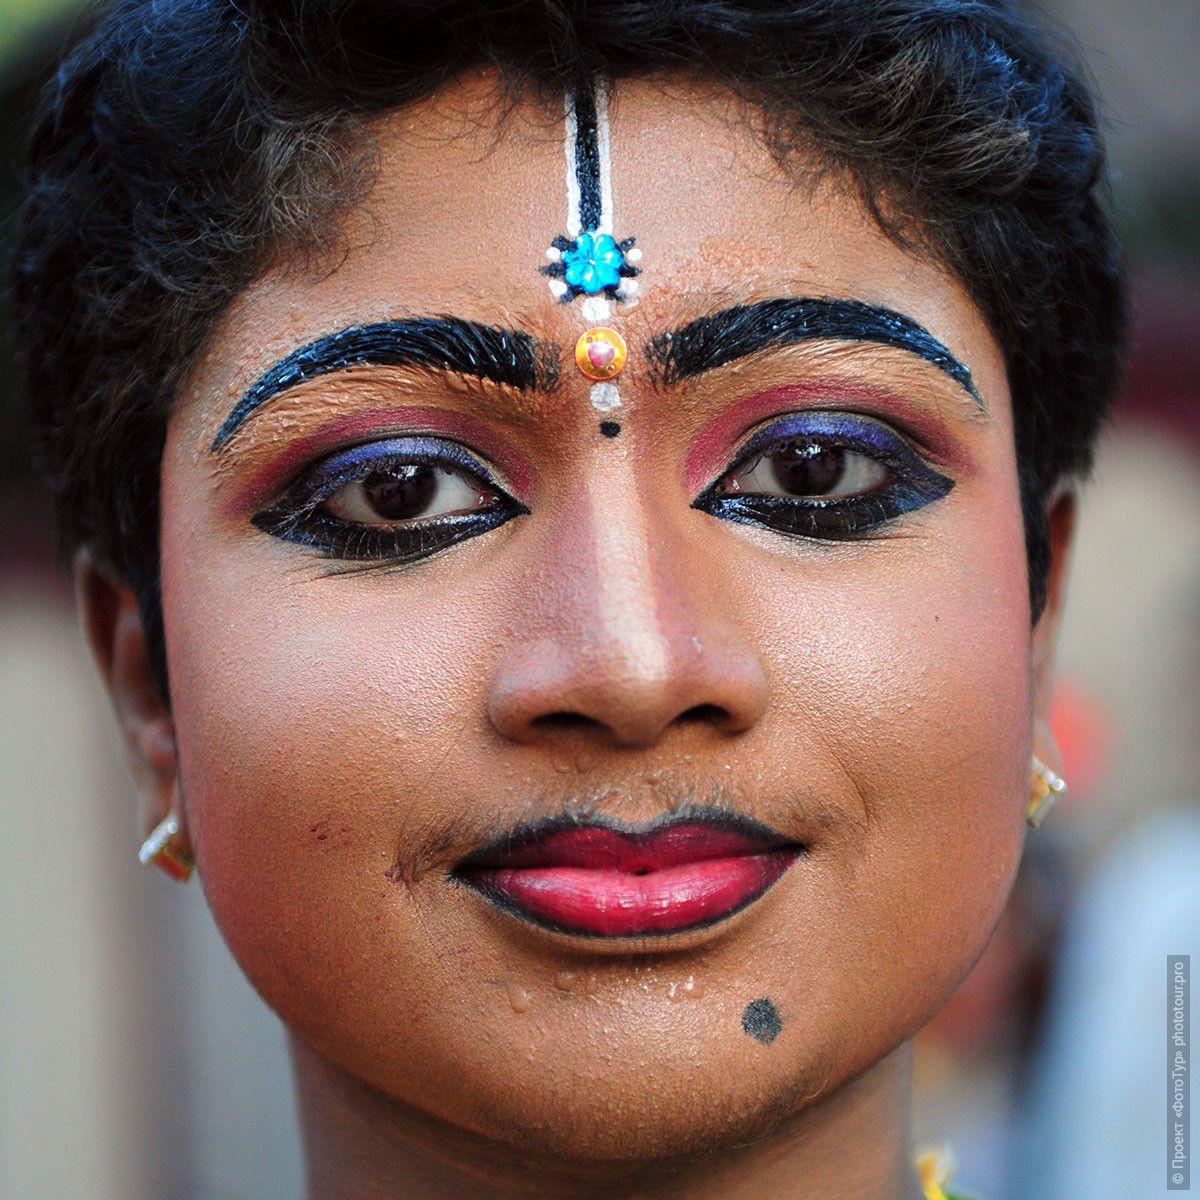 Фотография индуистский мальчик-танцор, праздник Шри Махашиваратри, 20.02.2012г., Тривандрум. Фототур в Кералу.